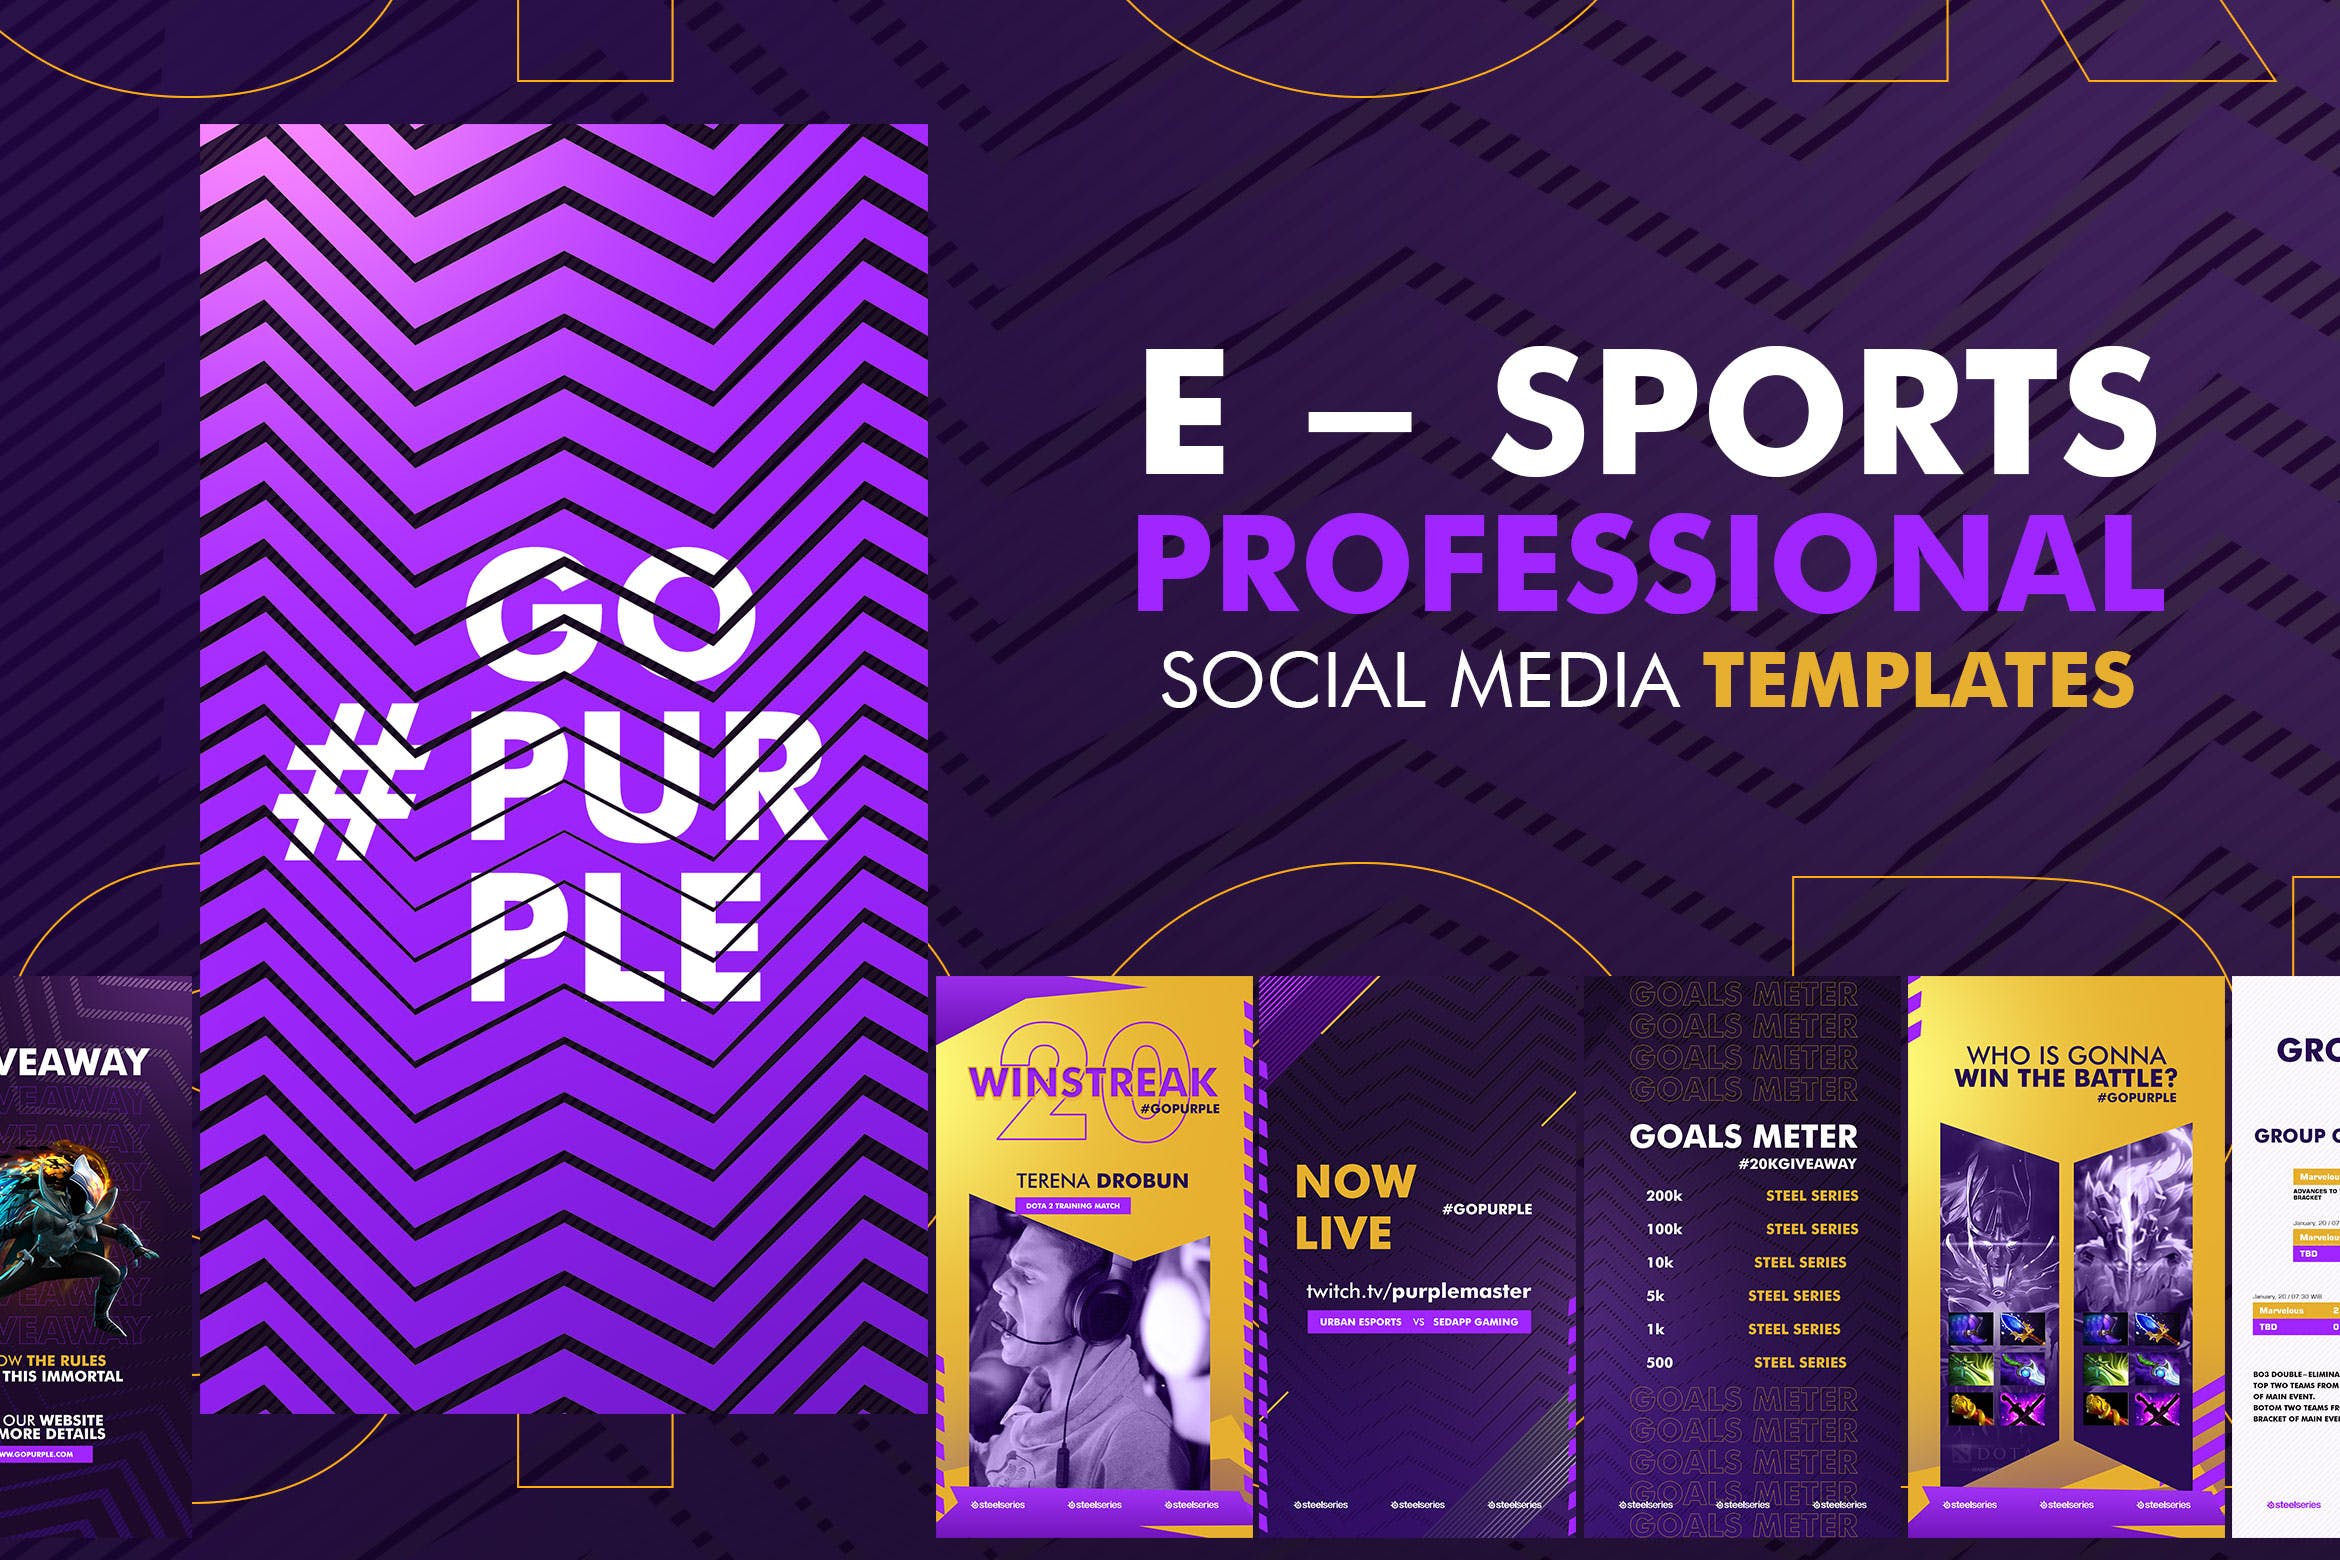 电子体育竞技比赛主题营销推广社交媒体模板 E – Sports Social Media Template设计素材模板